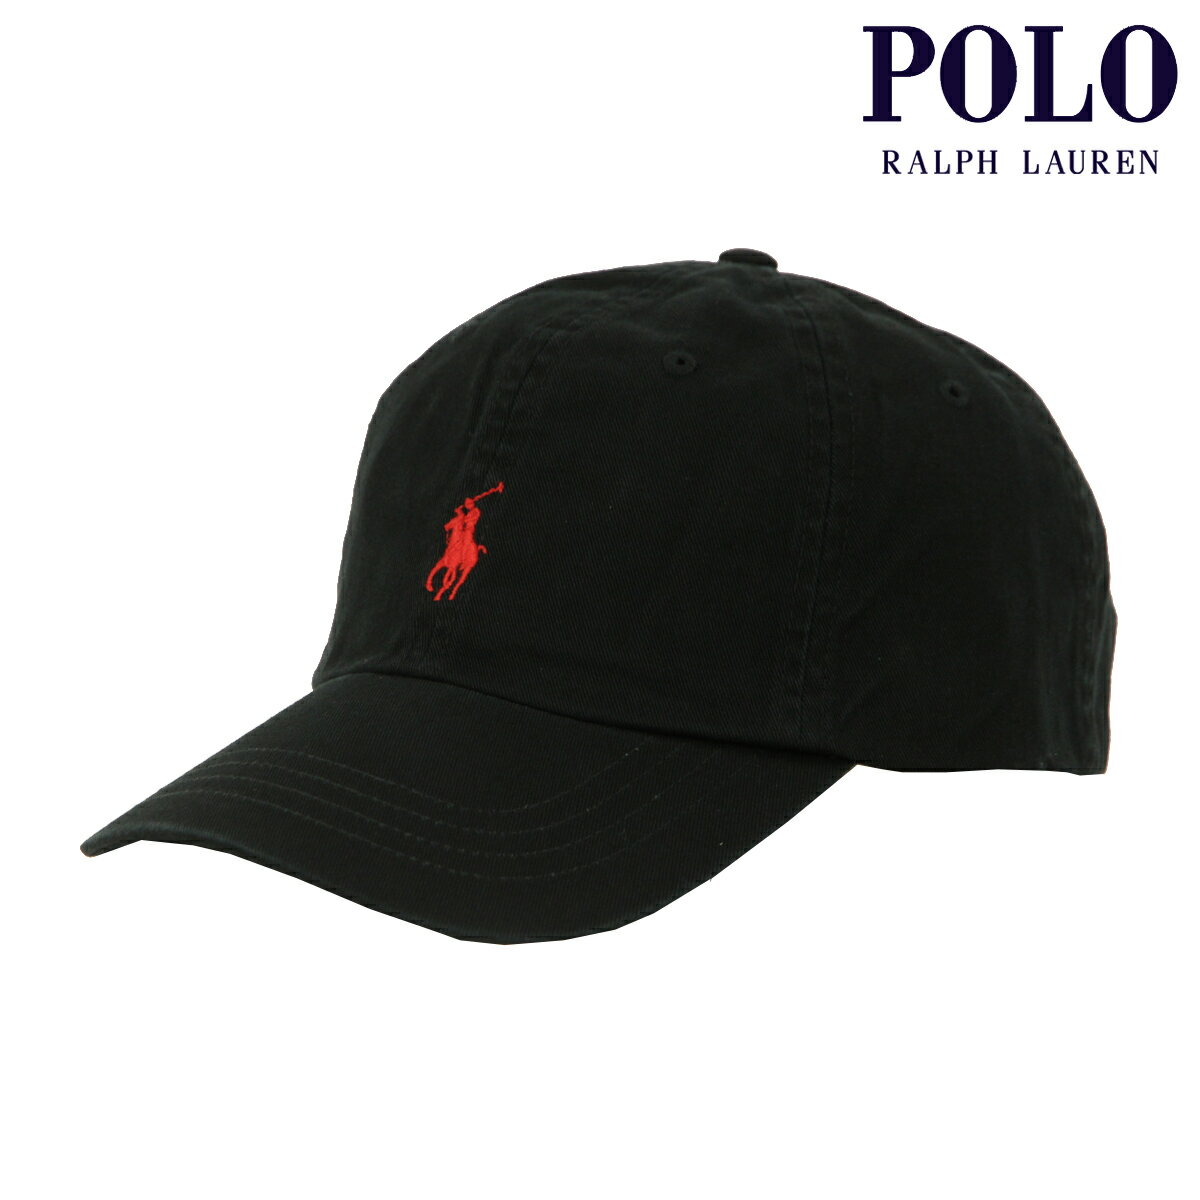 ポロ ラルフ ローレン ポロ ラルフローレン メンズ レディース キャップ 正規品 POLO RALPH LAUREN 帽子 ロゴ ポニー CLASSIC SPORTS CAP BLACK 710548524